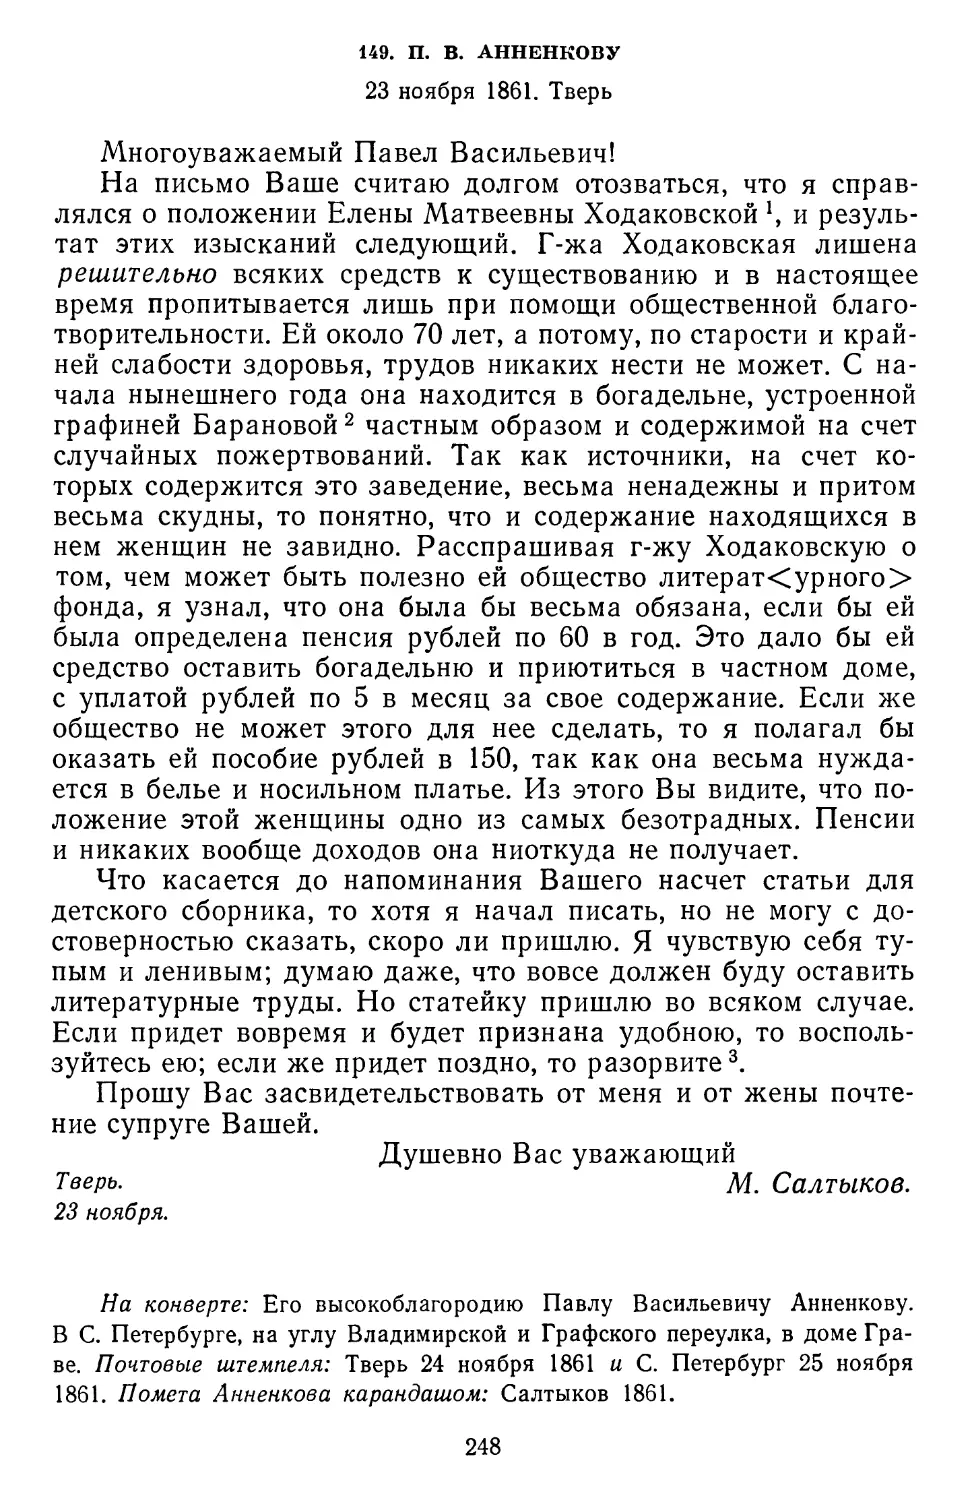 149.П.В. Анненкову. 23 ноября 1861. Тверь